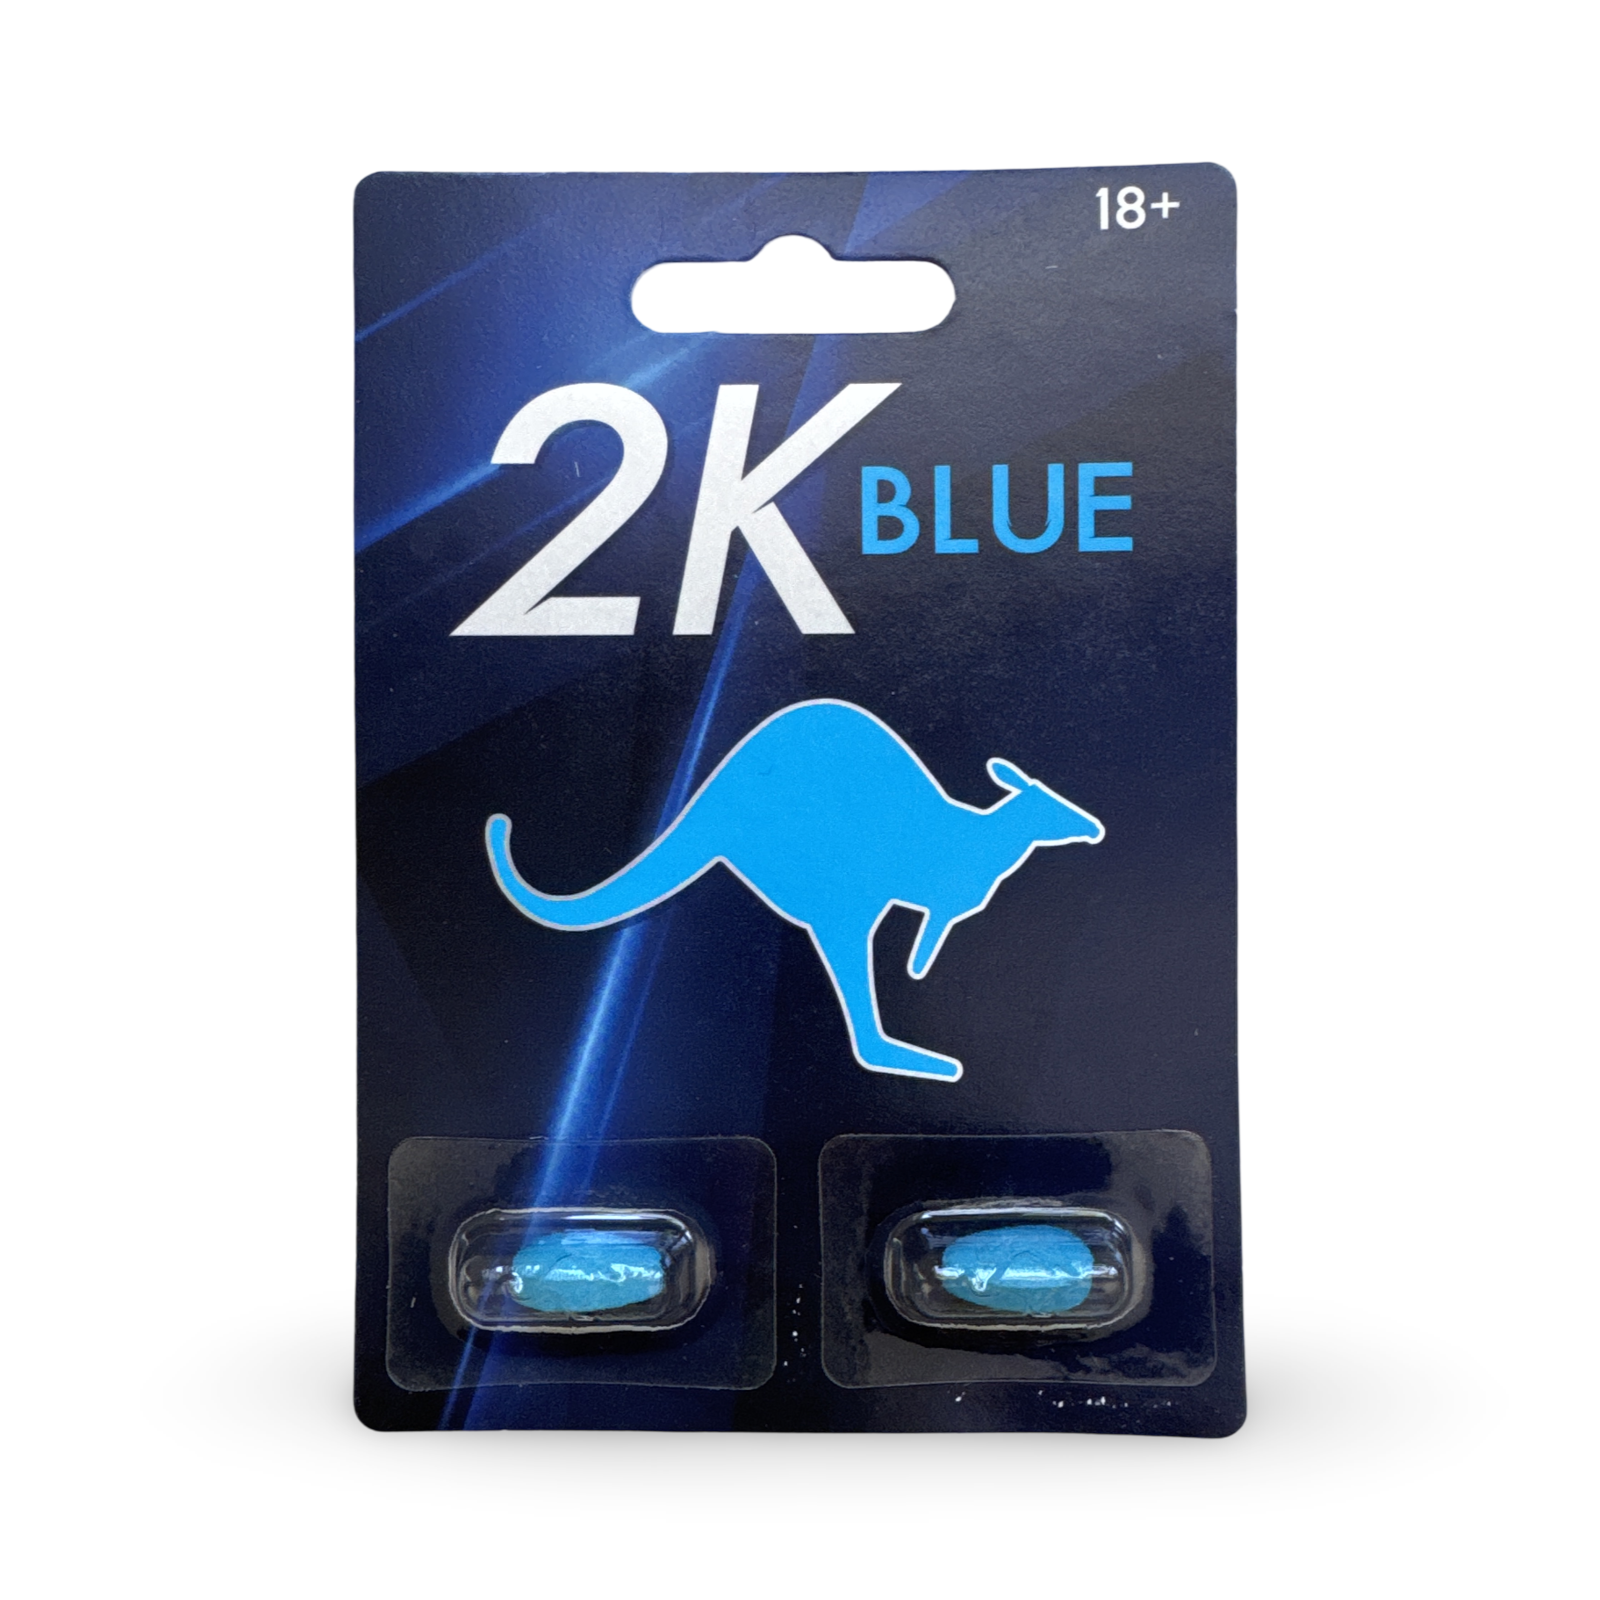 Kangaroo 2K Blue Men's Supplement Sex Pills 3200mg - Max Strength Male Enhancement